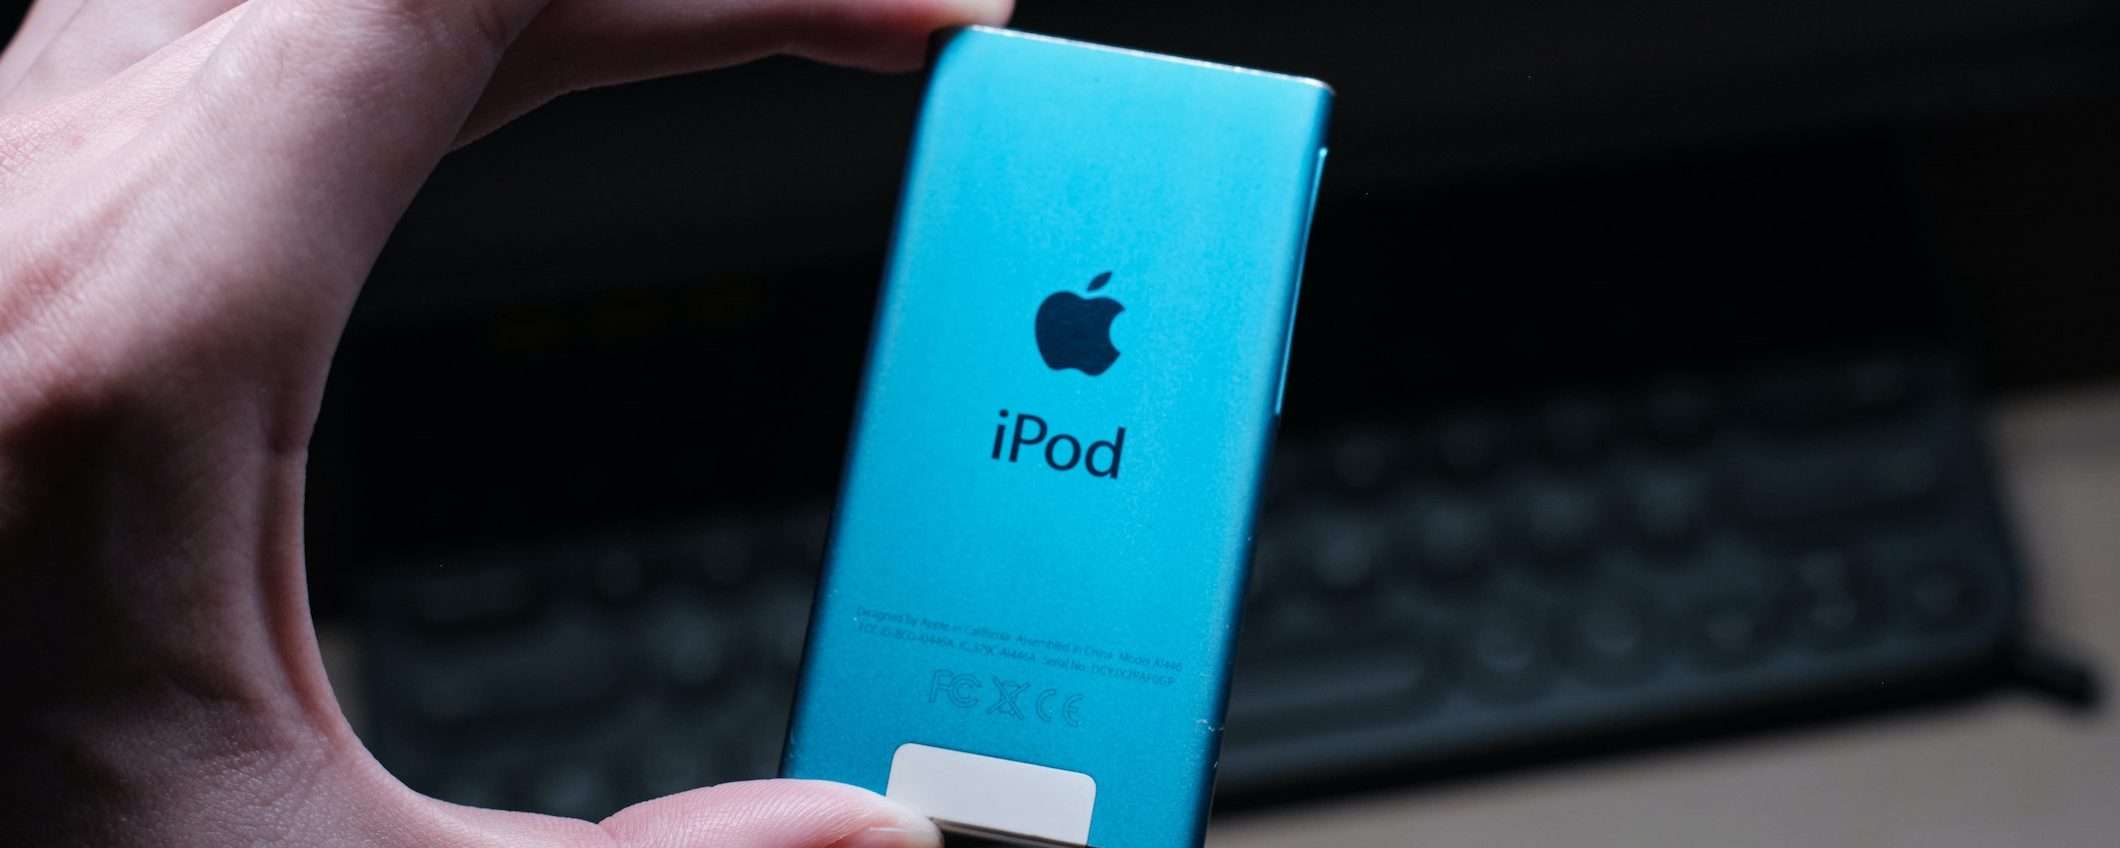 iPod: Apple farà diventare obsoleti vari modelli